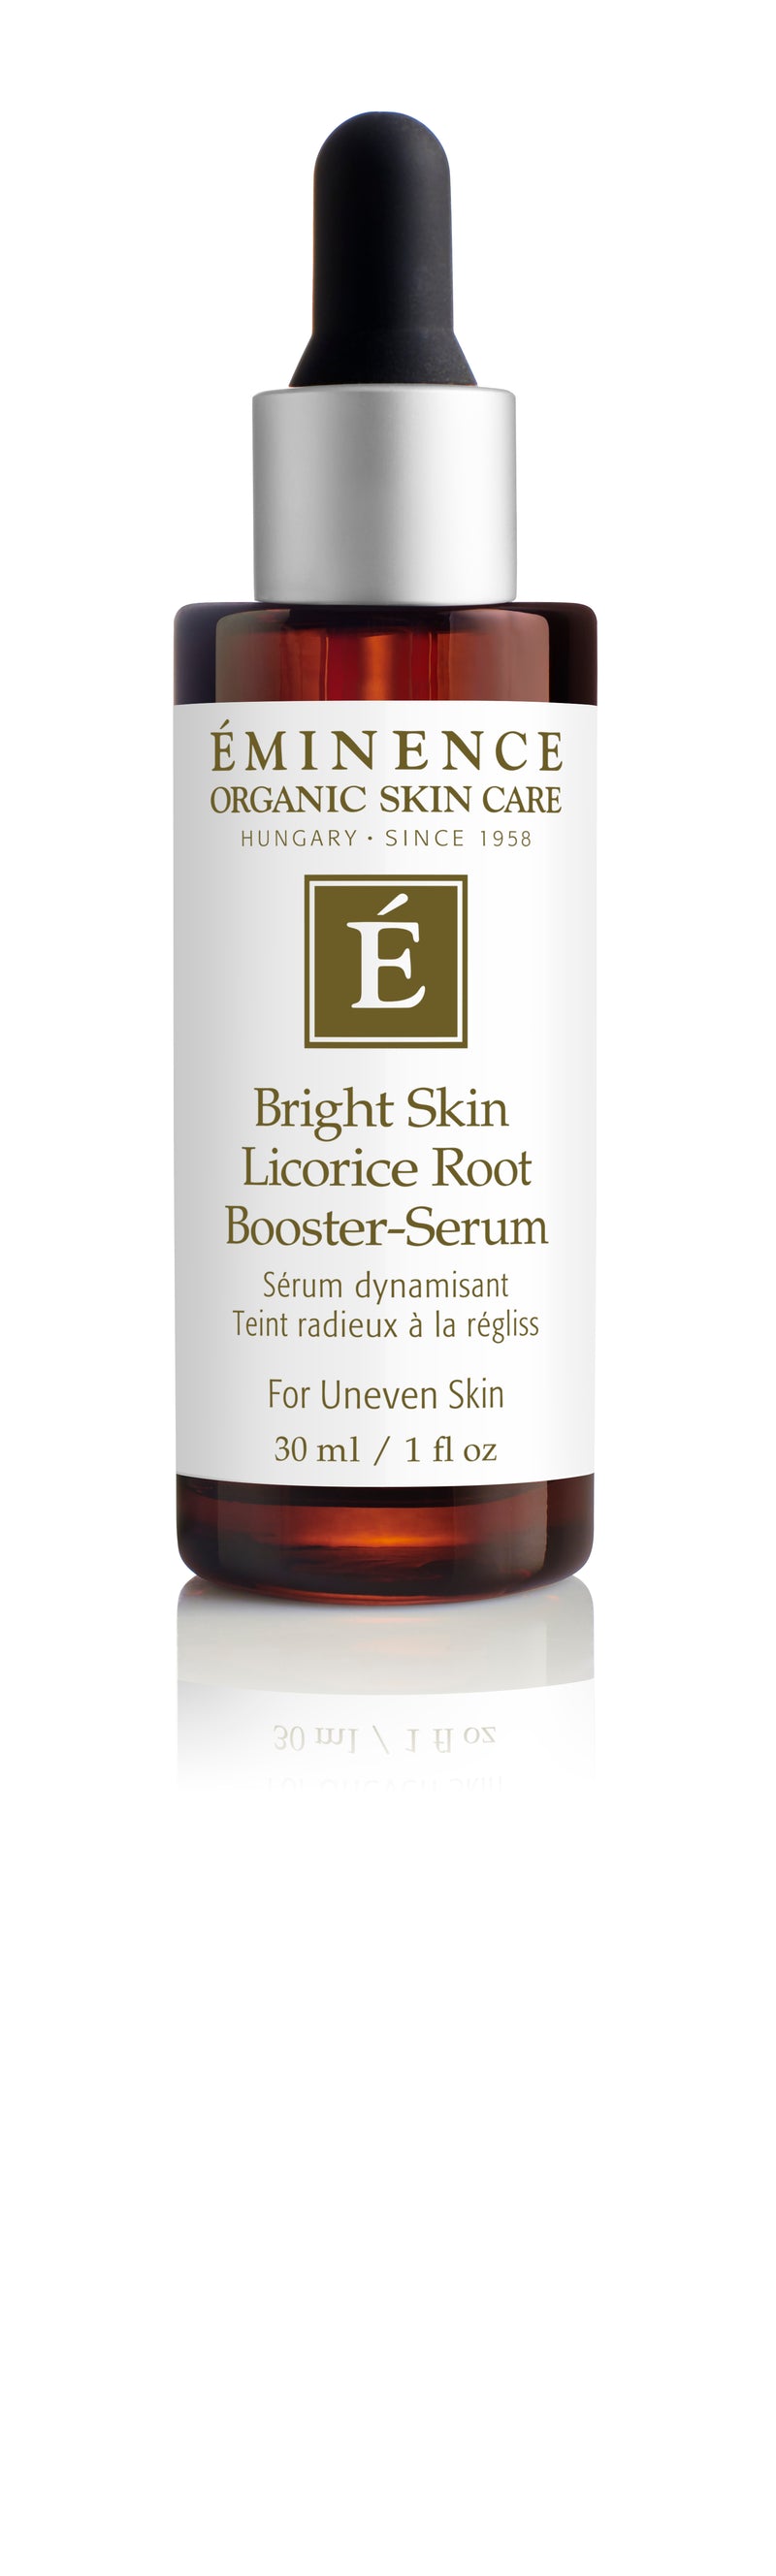 Bright Skin Licorice Root Booster-Serum